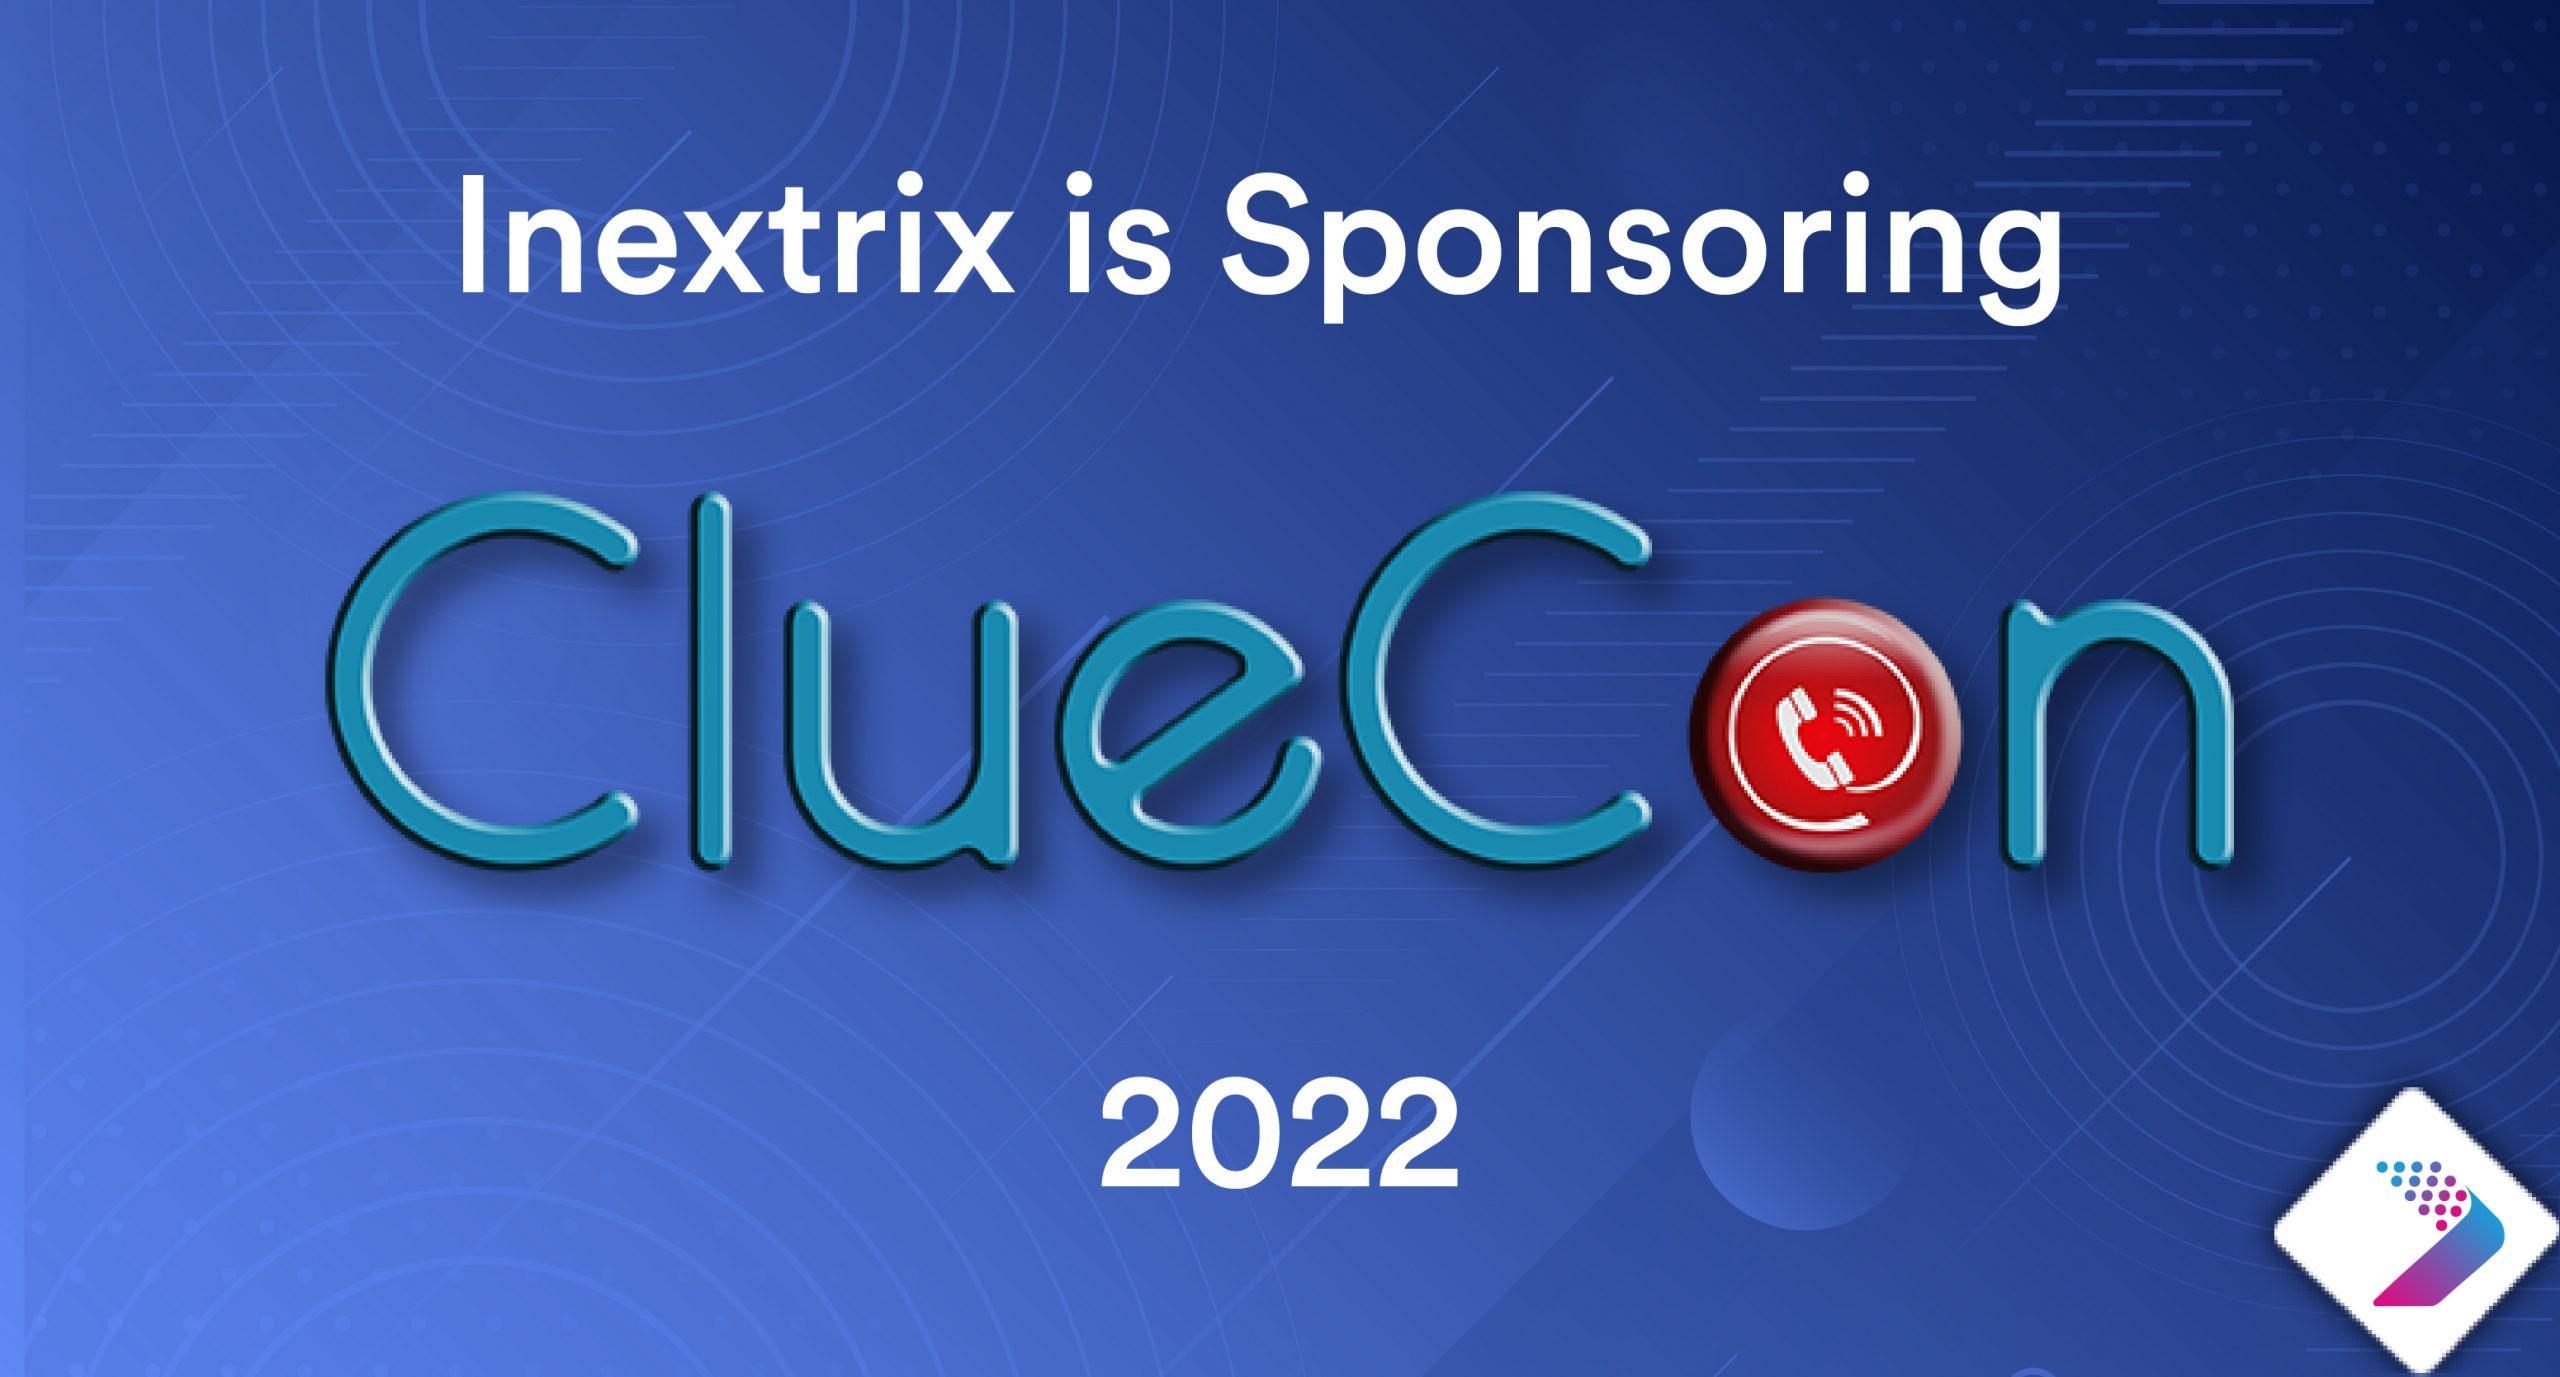 Inextrix is sponsoring cluecon 2022